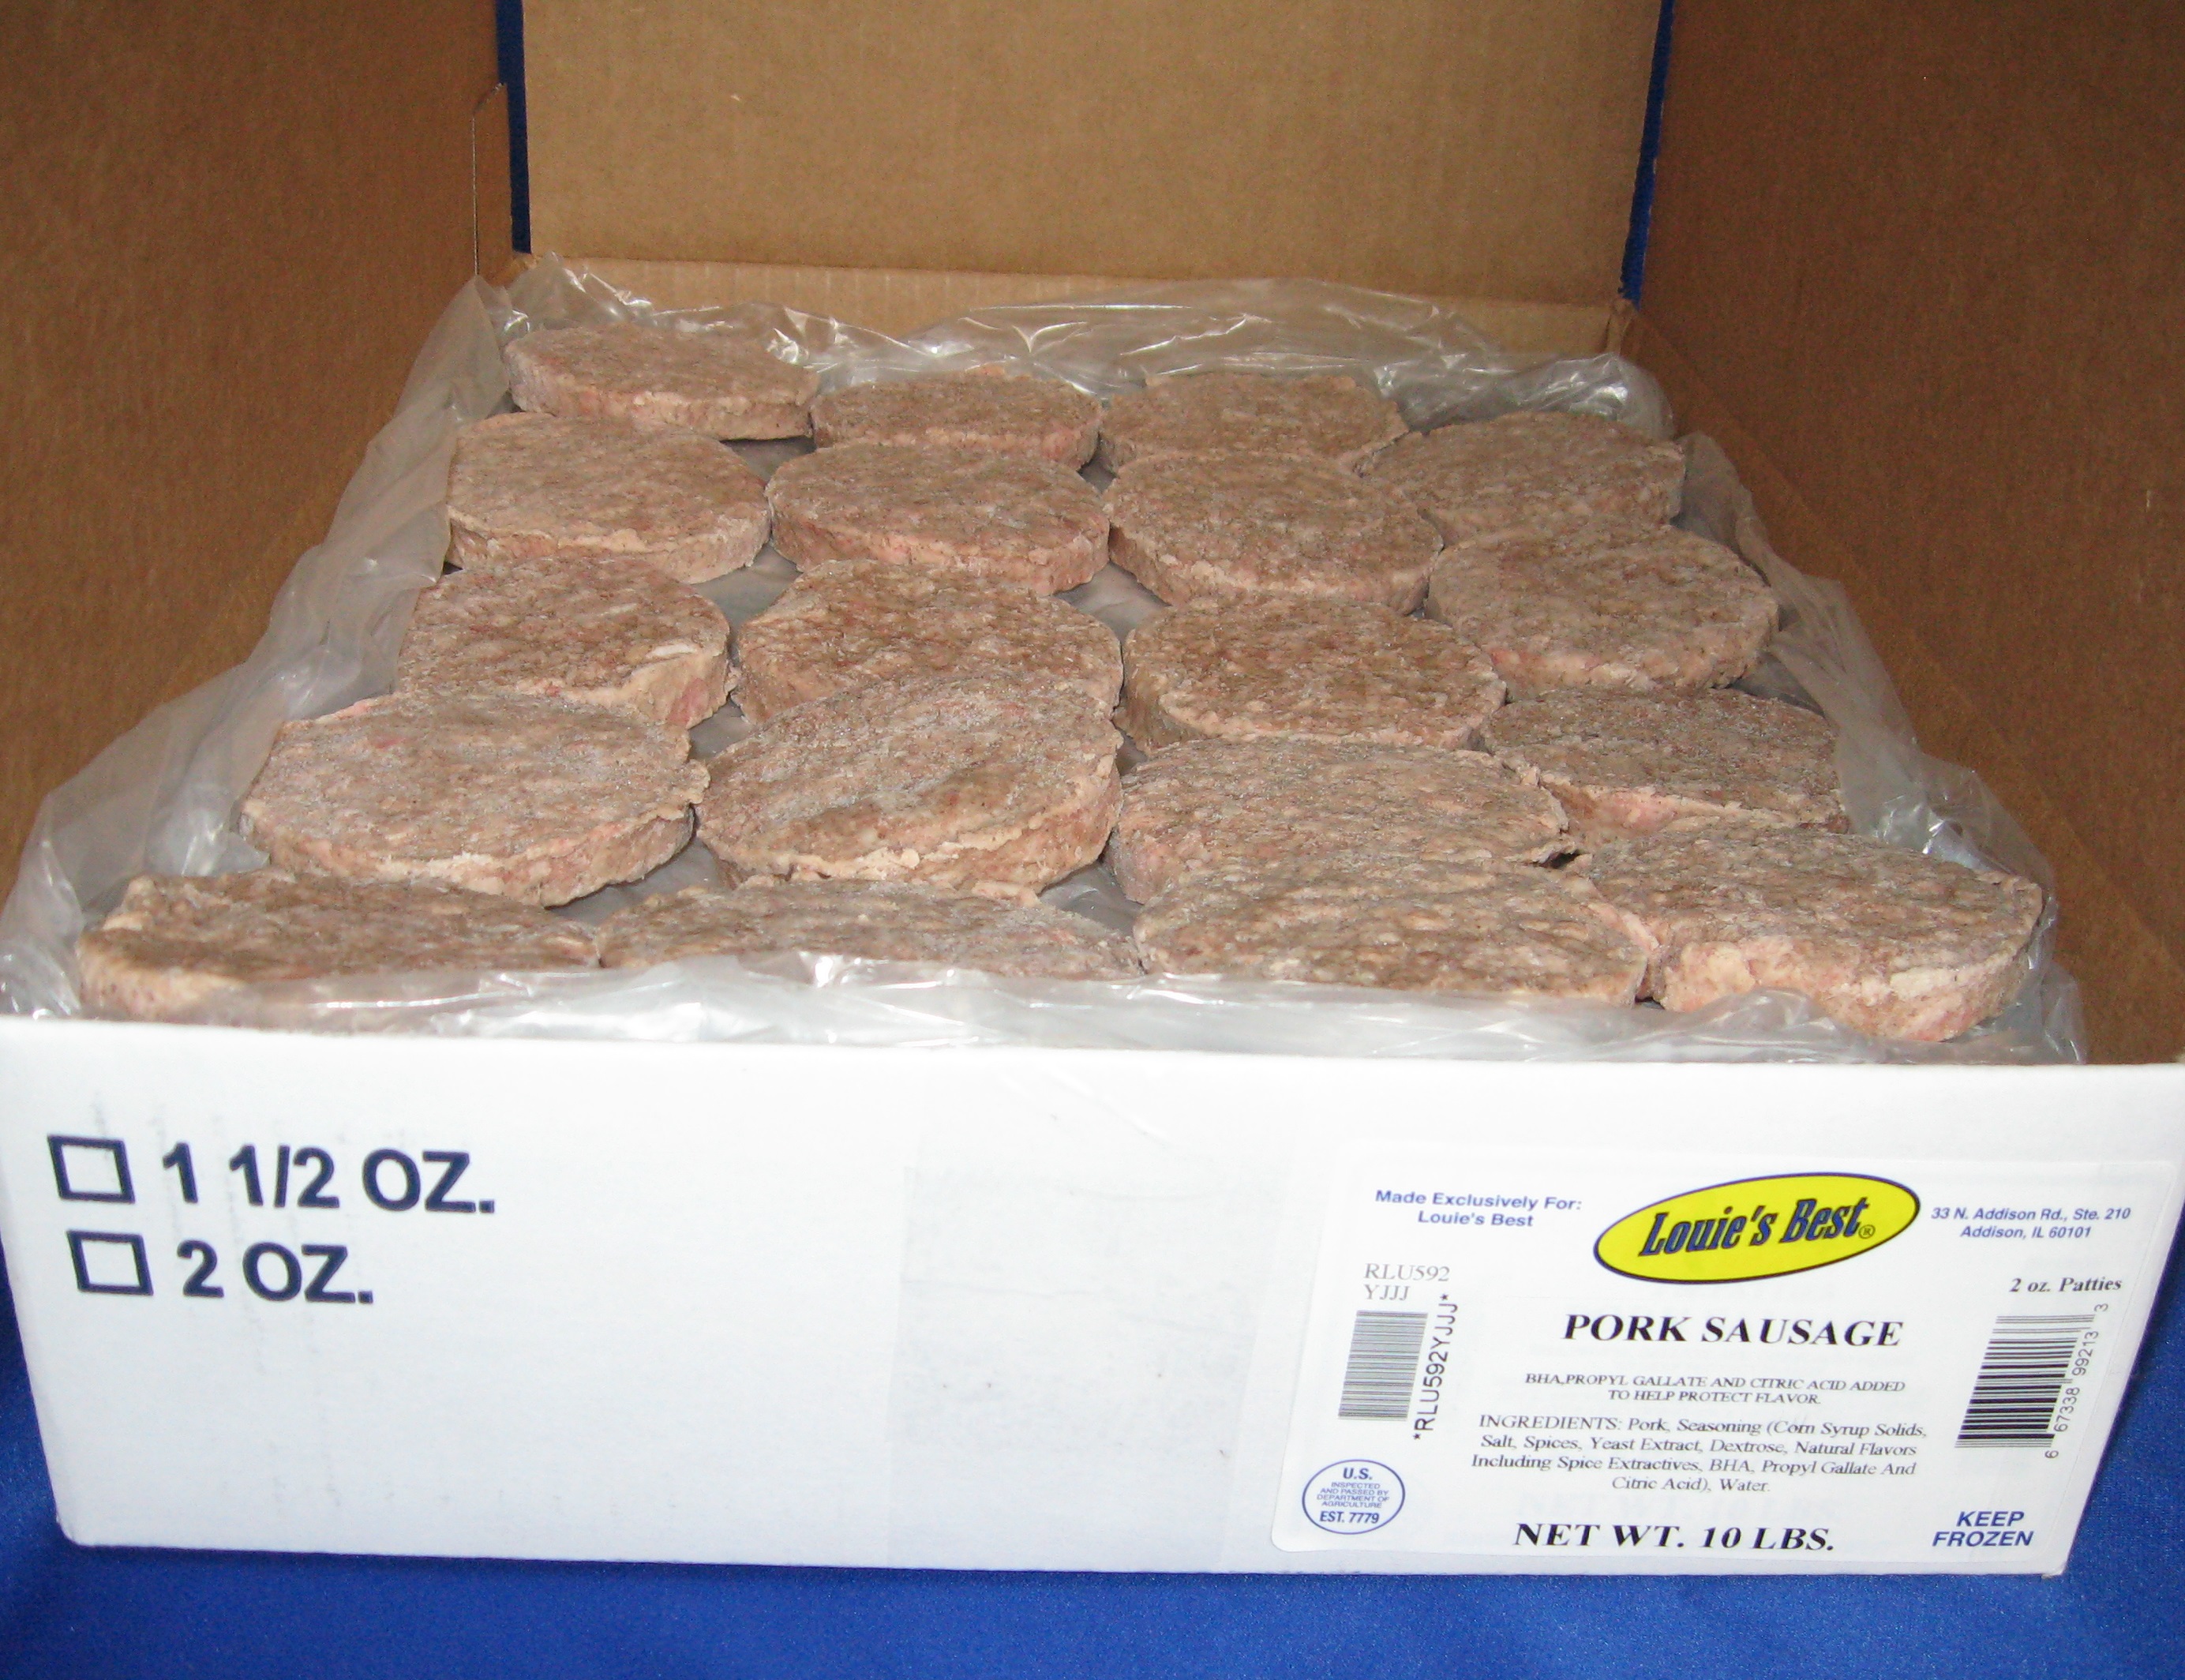 2 oz. Pork Sausage Patty product image